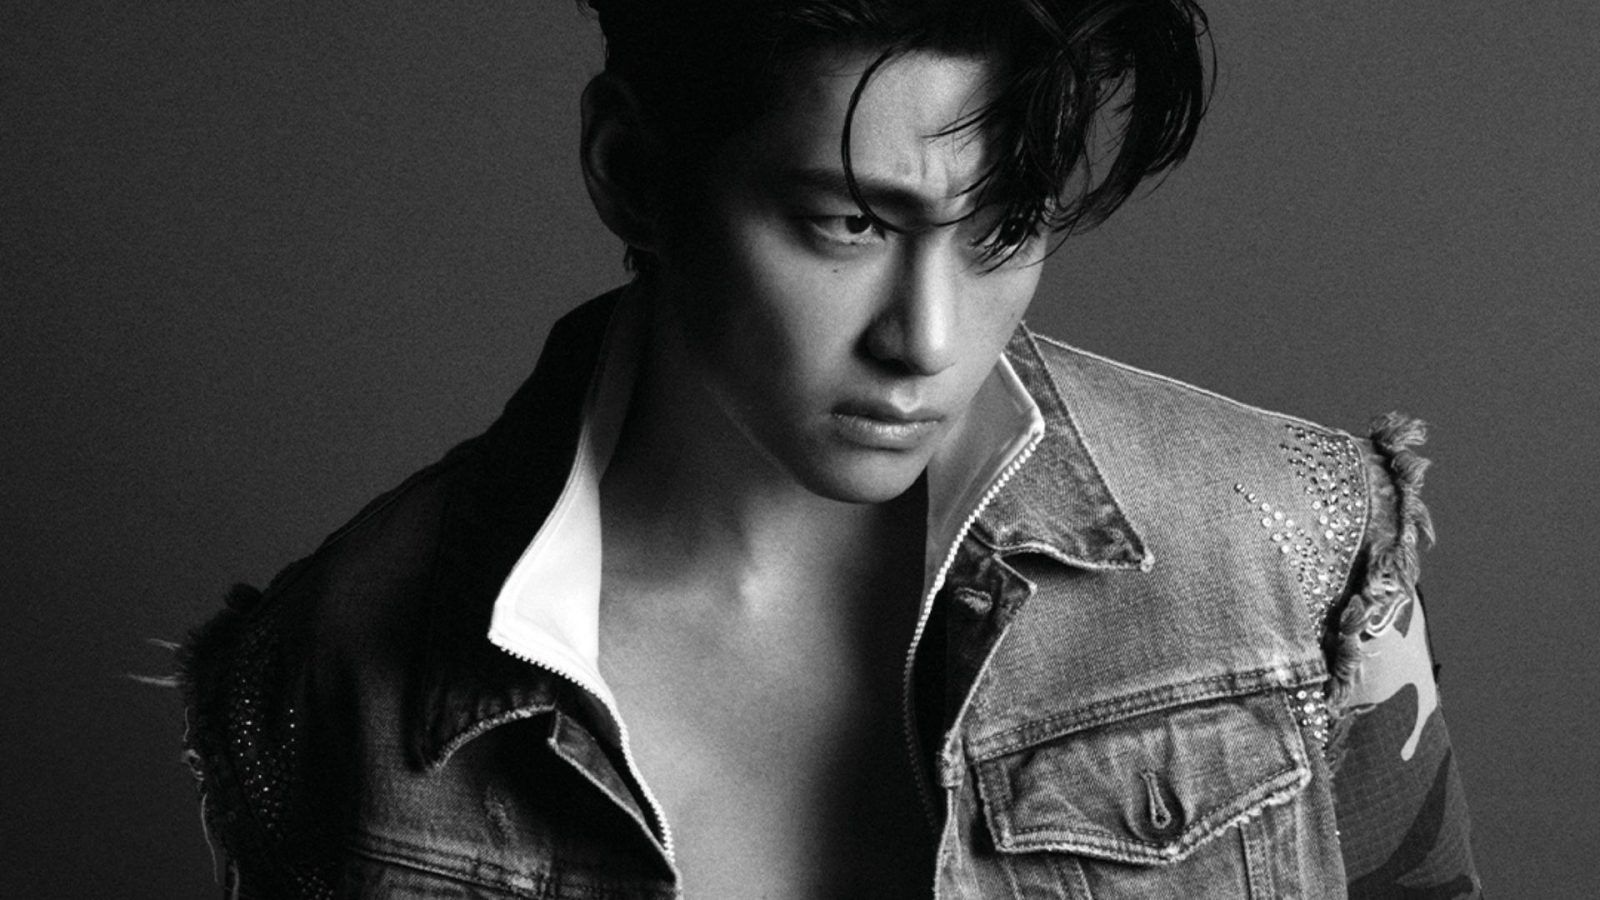 BTS V aka Kim Taehyung looks handsome in latest photoshoot - IMDb